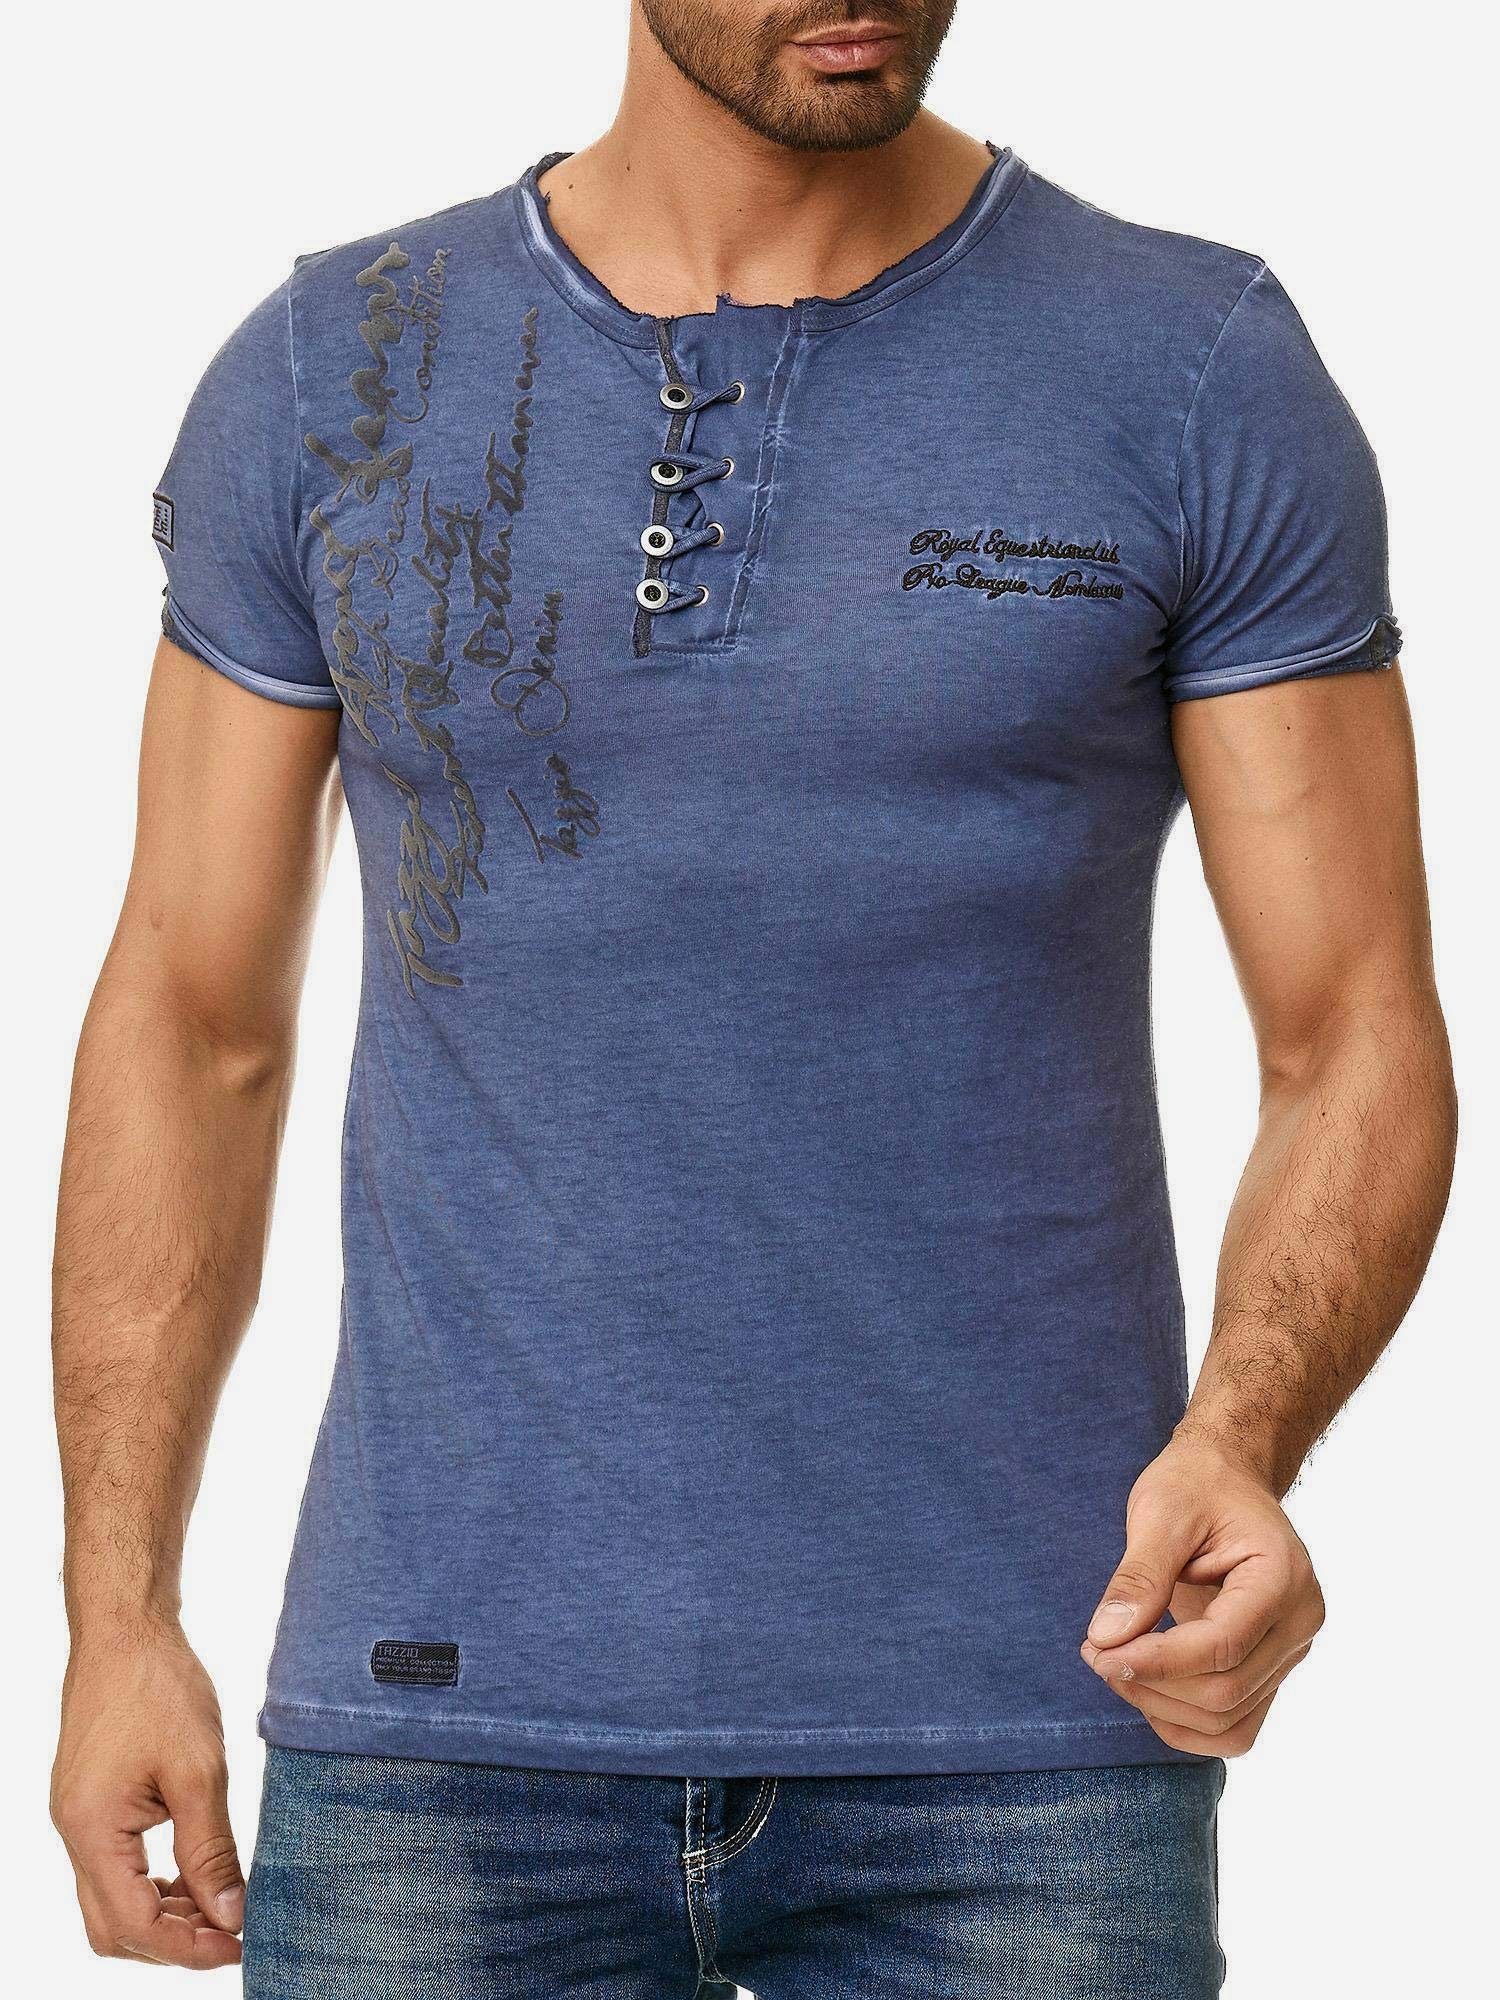 Ölwaschung Rundhalsshirt T-Shirt offenem Used Look in Tazzio und Kragen 4050-1 dezentem mit navy